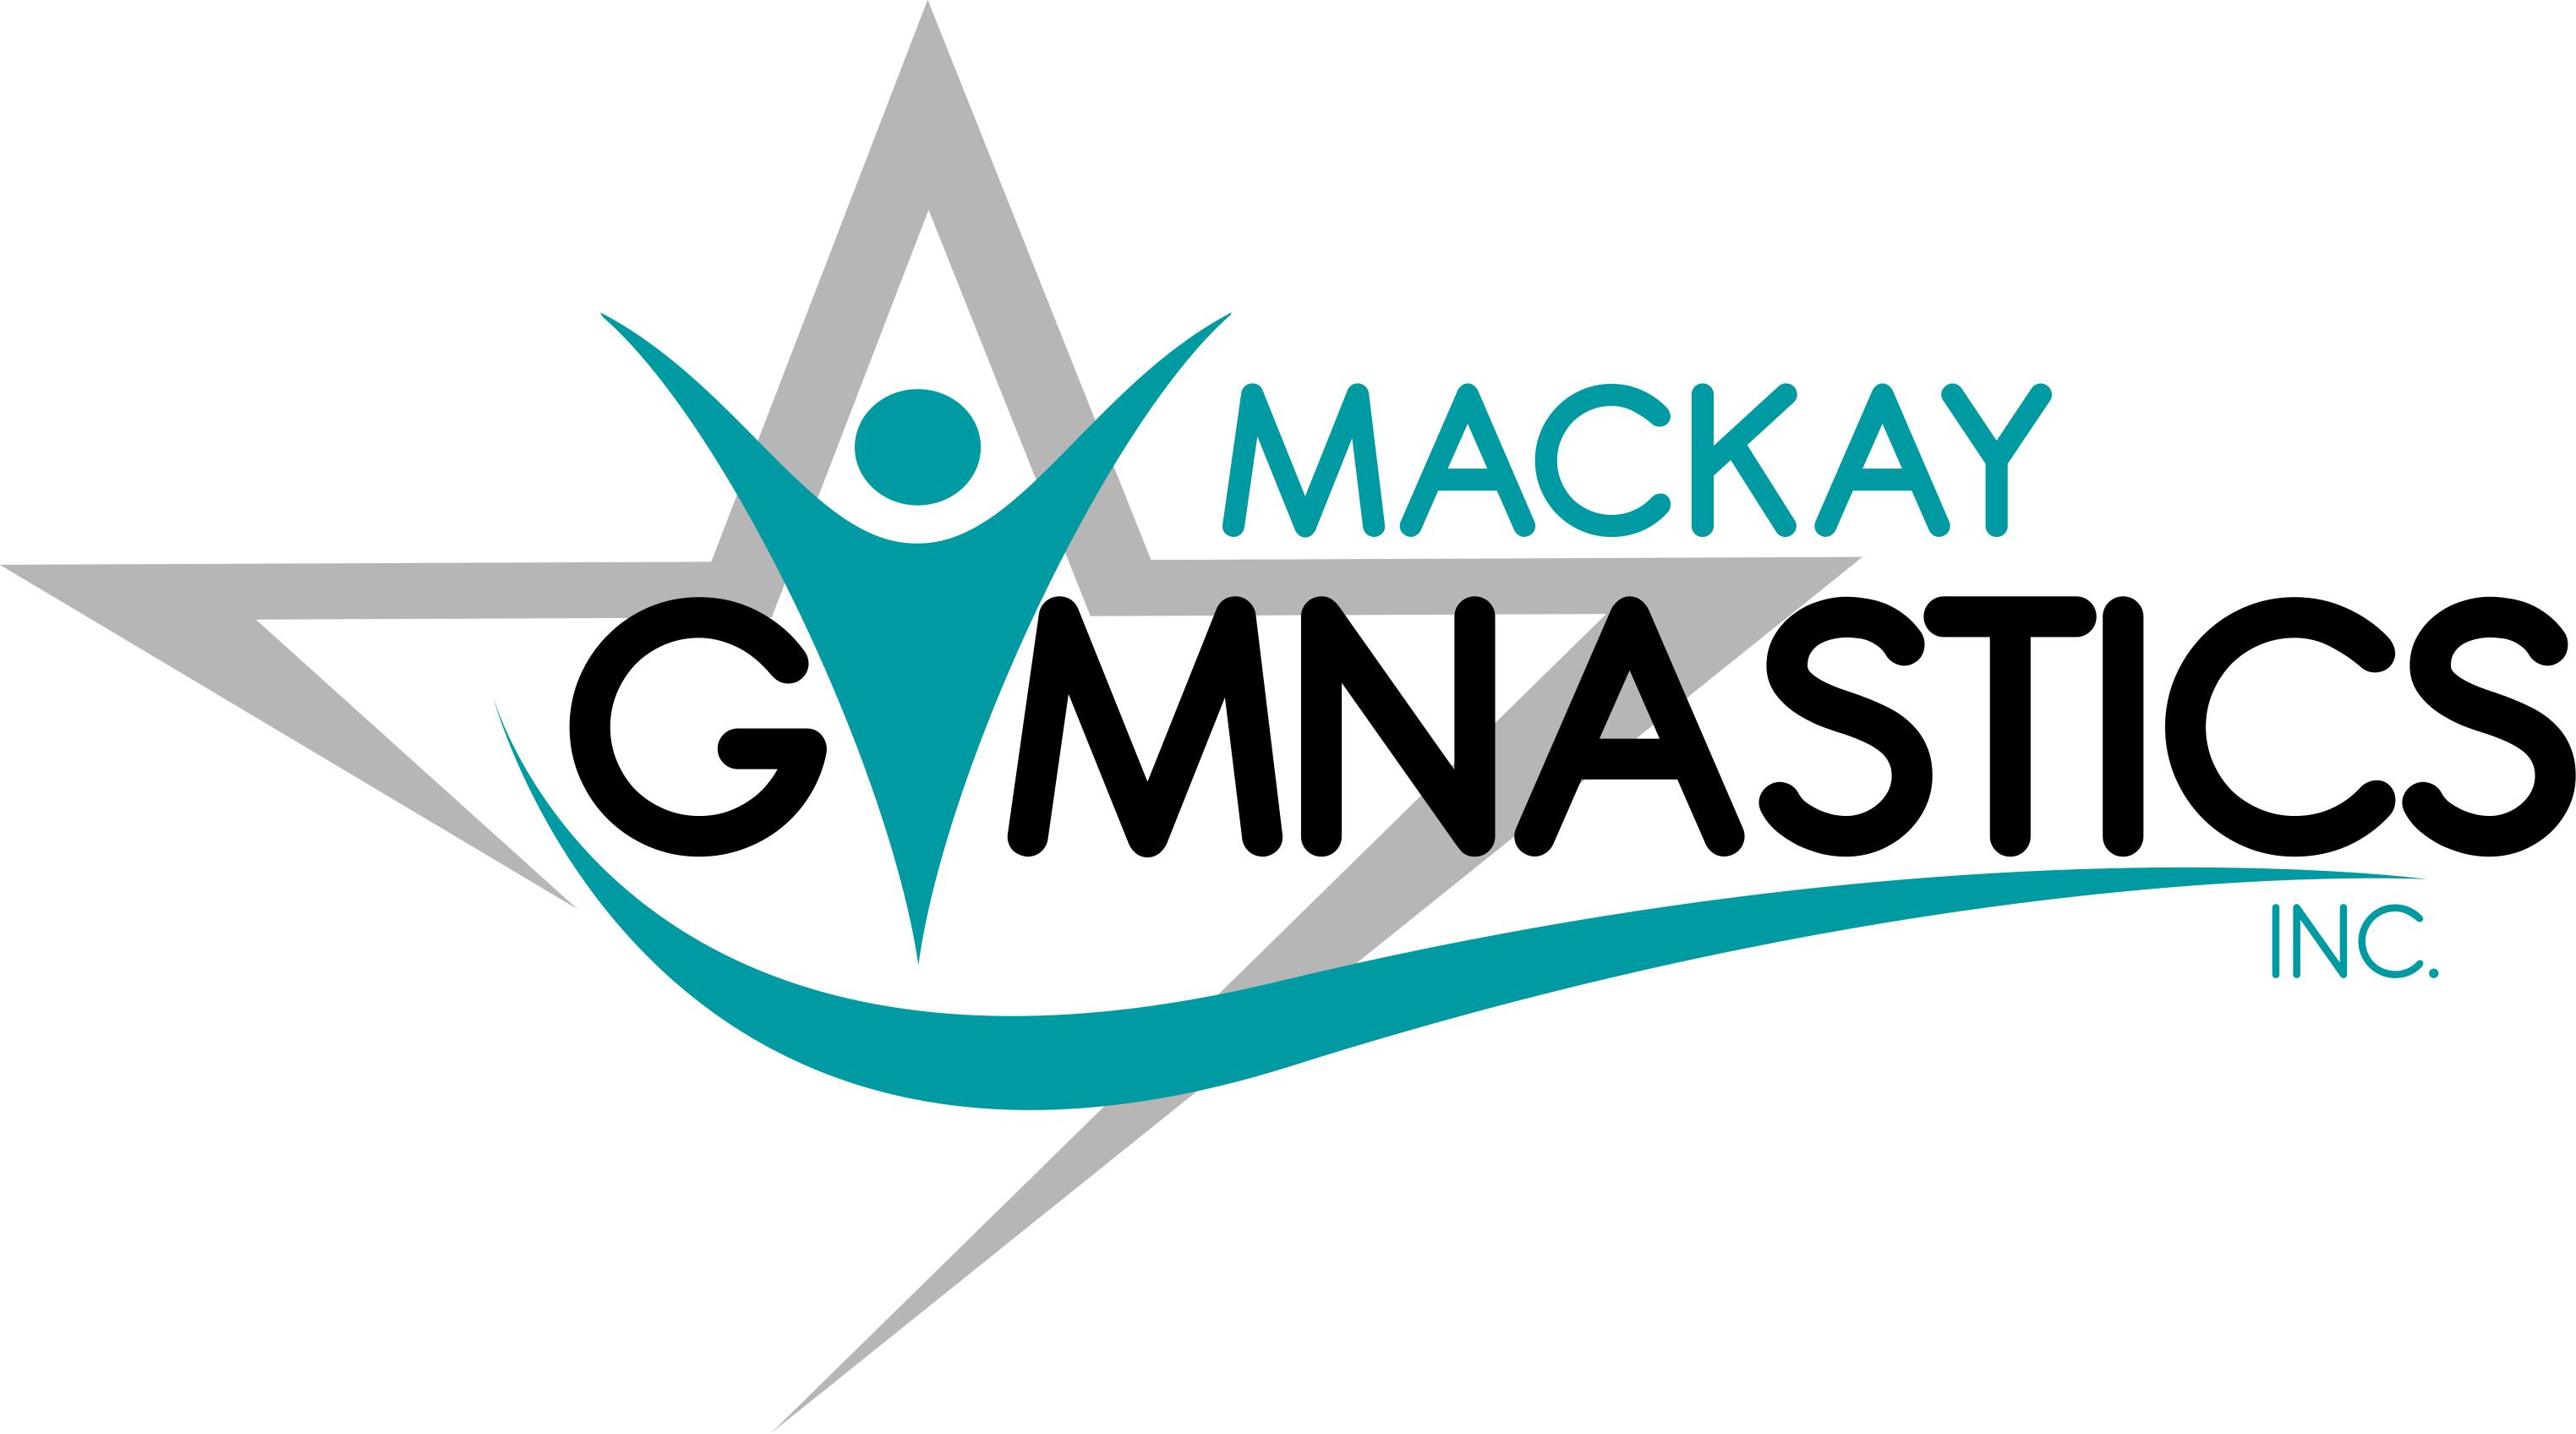 Gymnastics Logos